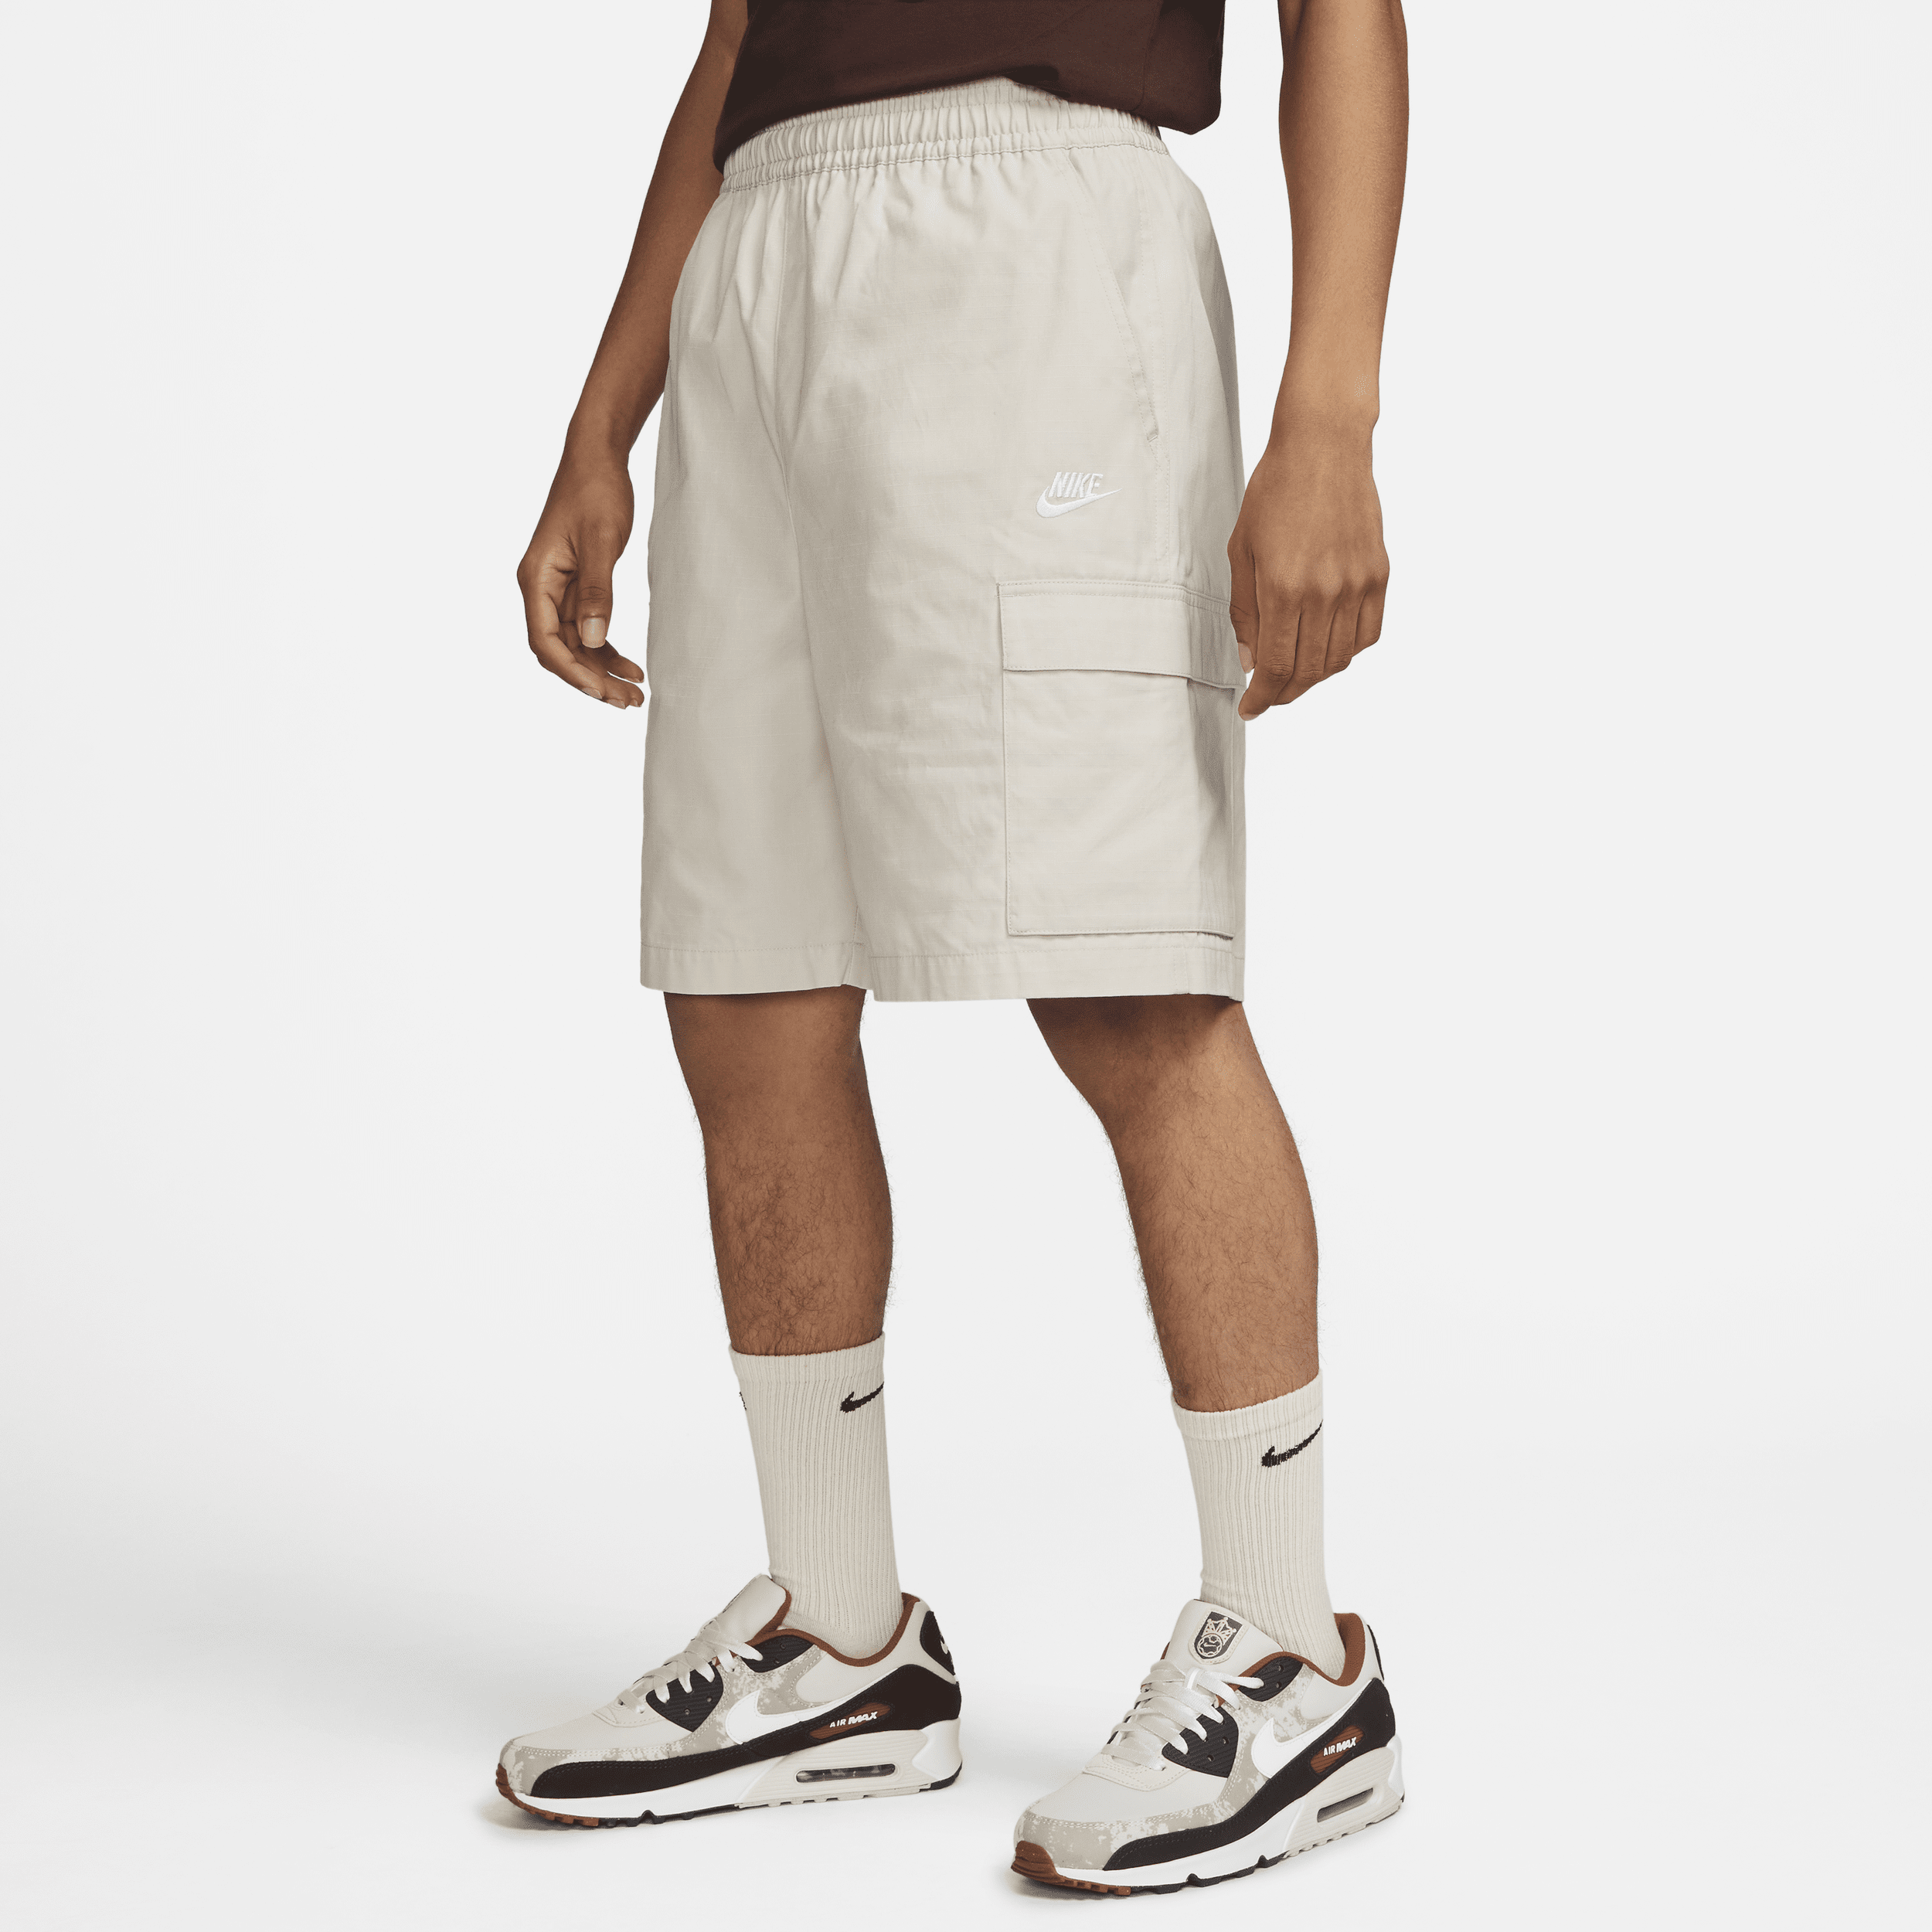 Nike Club Pantalón corto cargo de tejido Woven - Hombre - Marrón